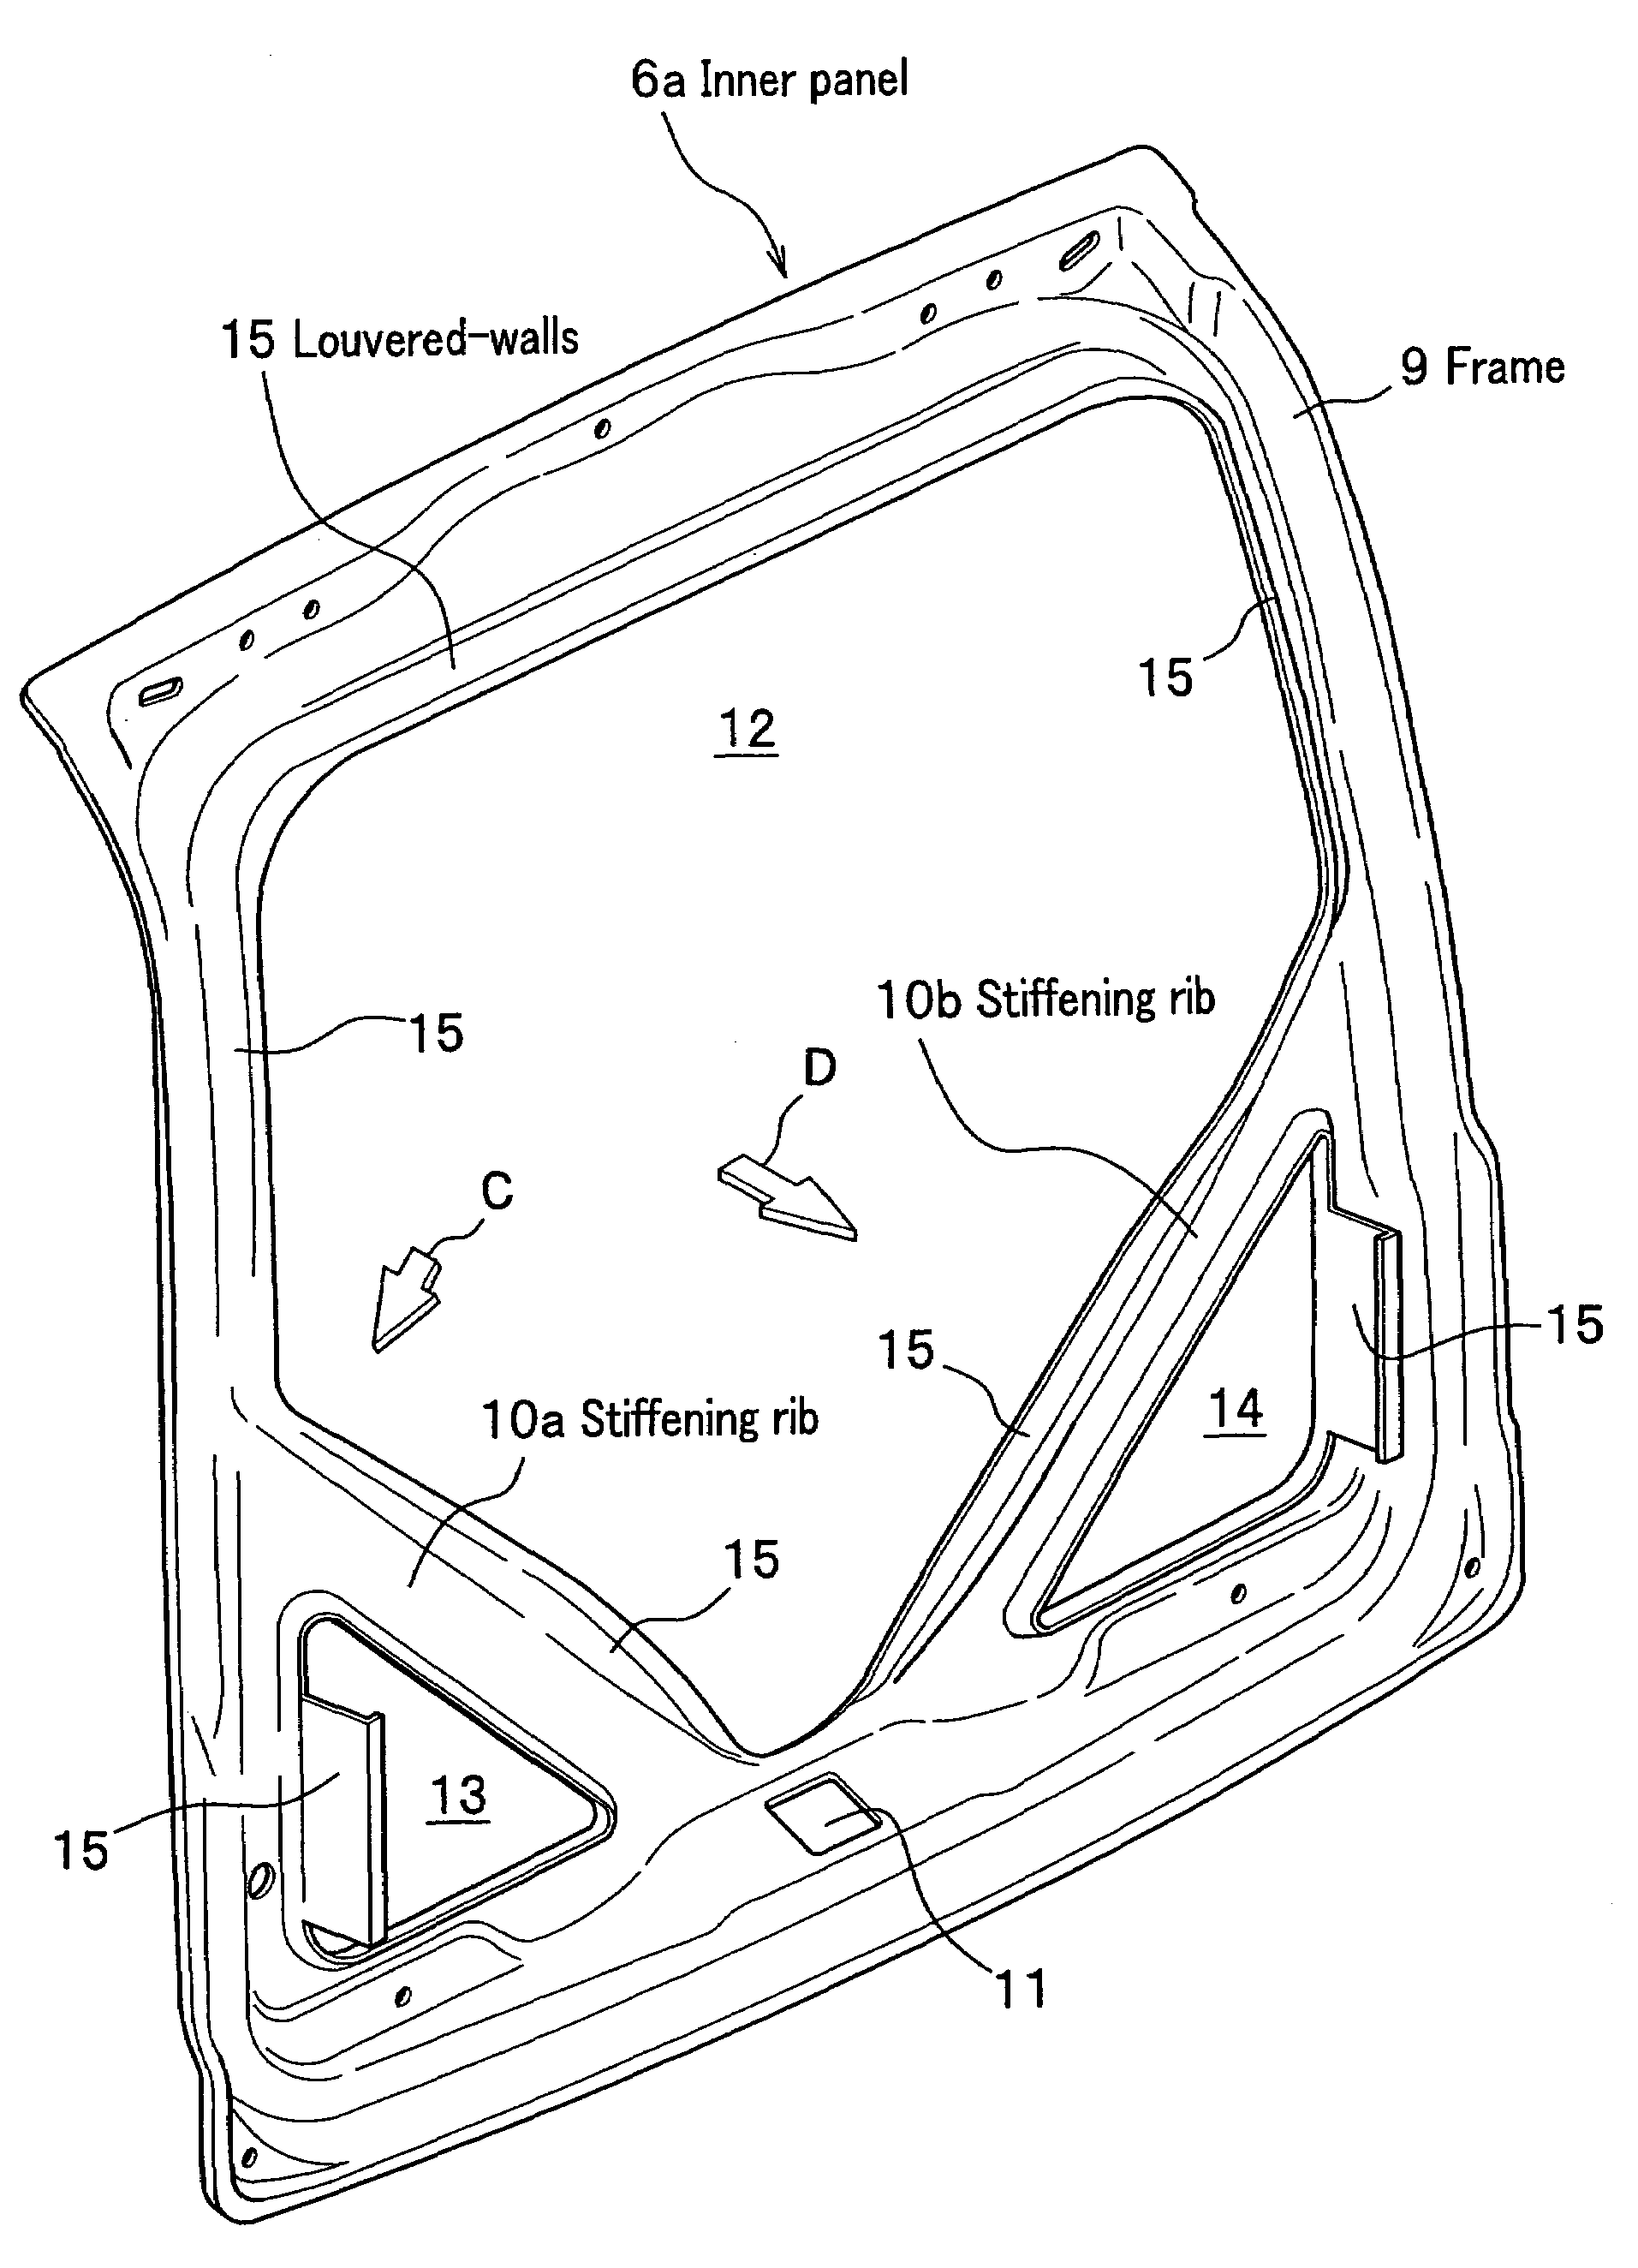 Hatchback door structure for vehicles